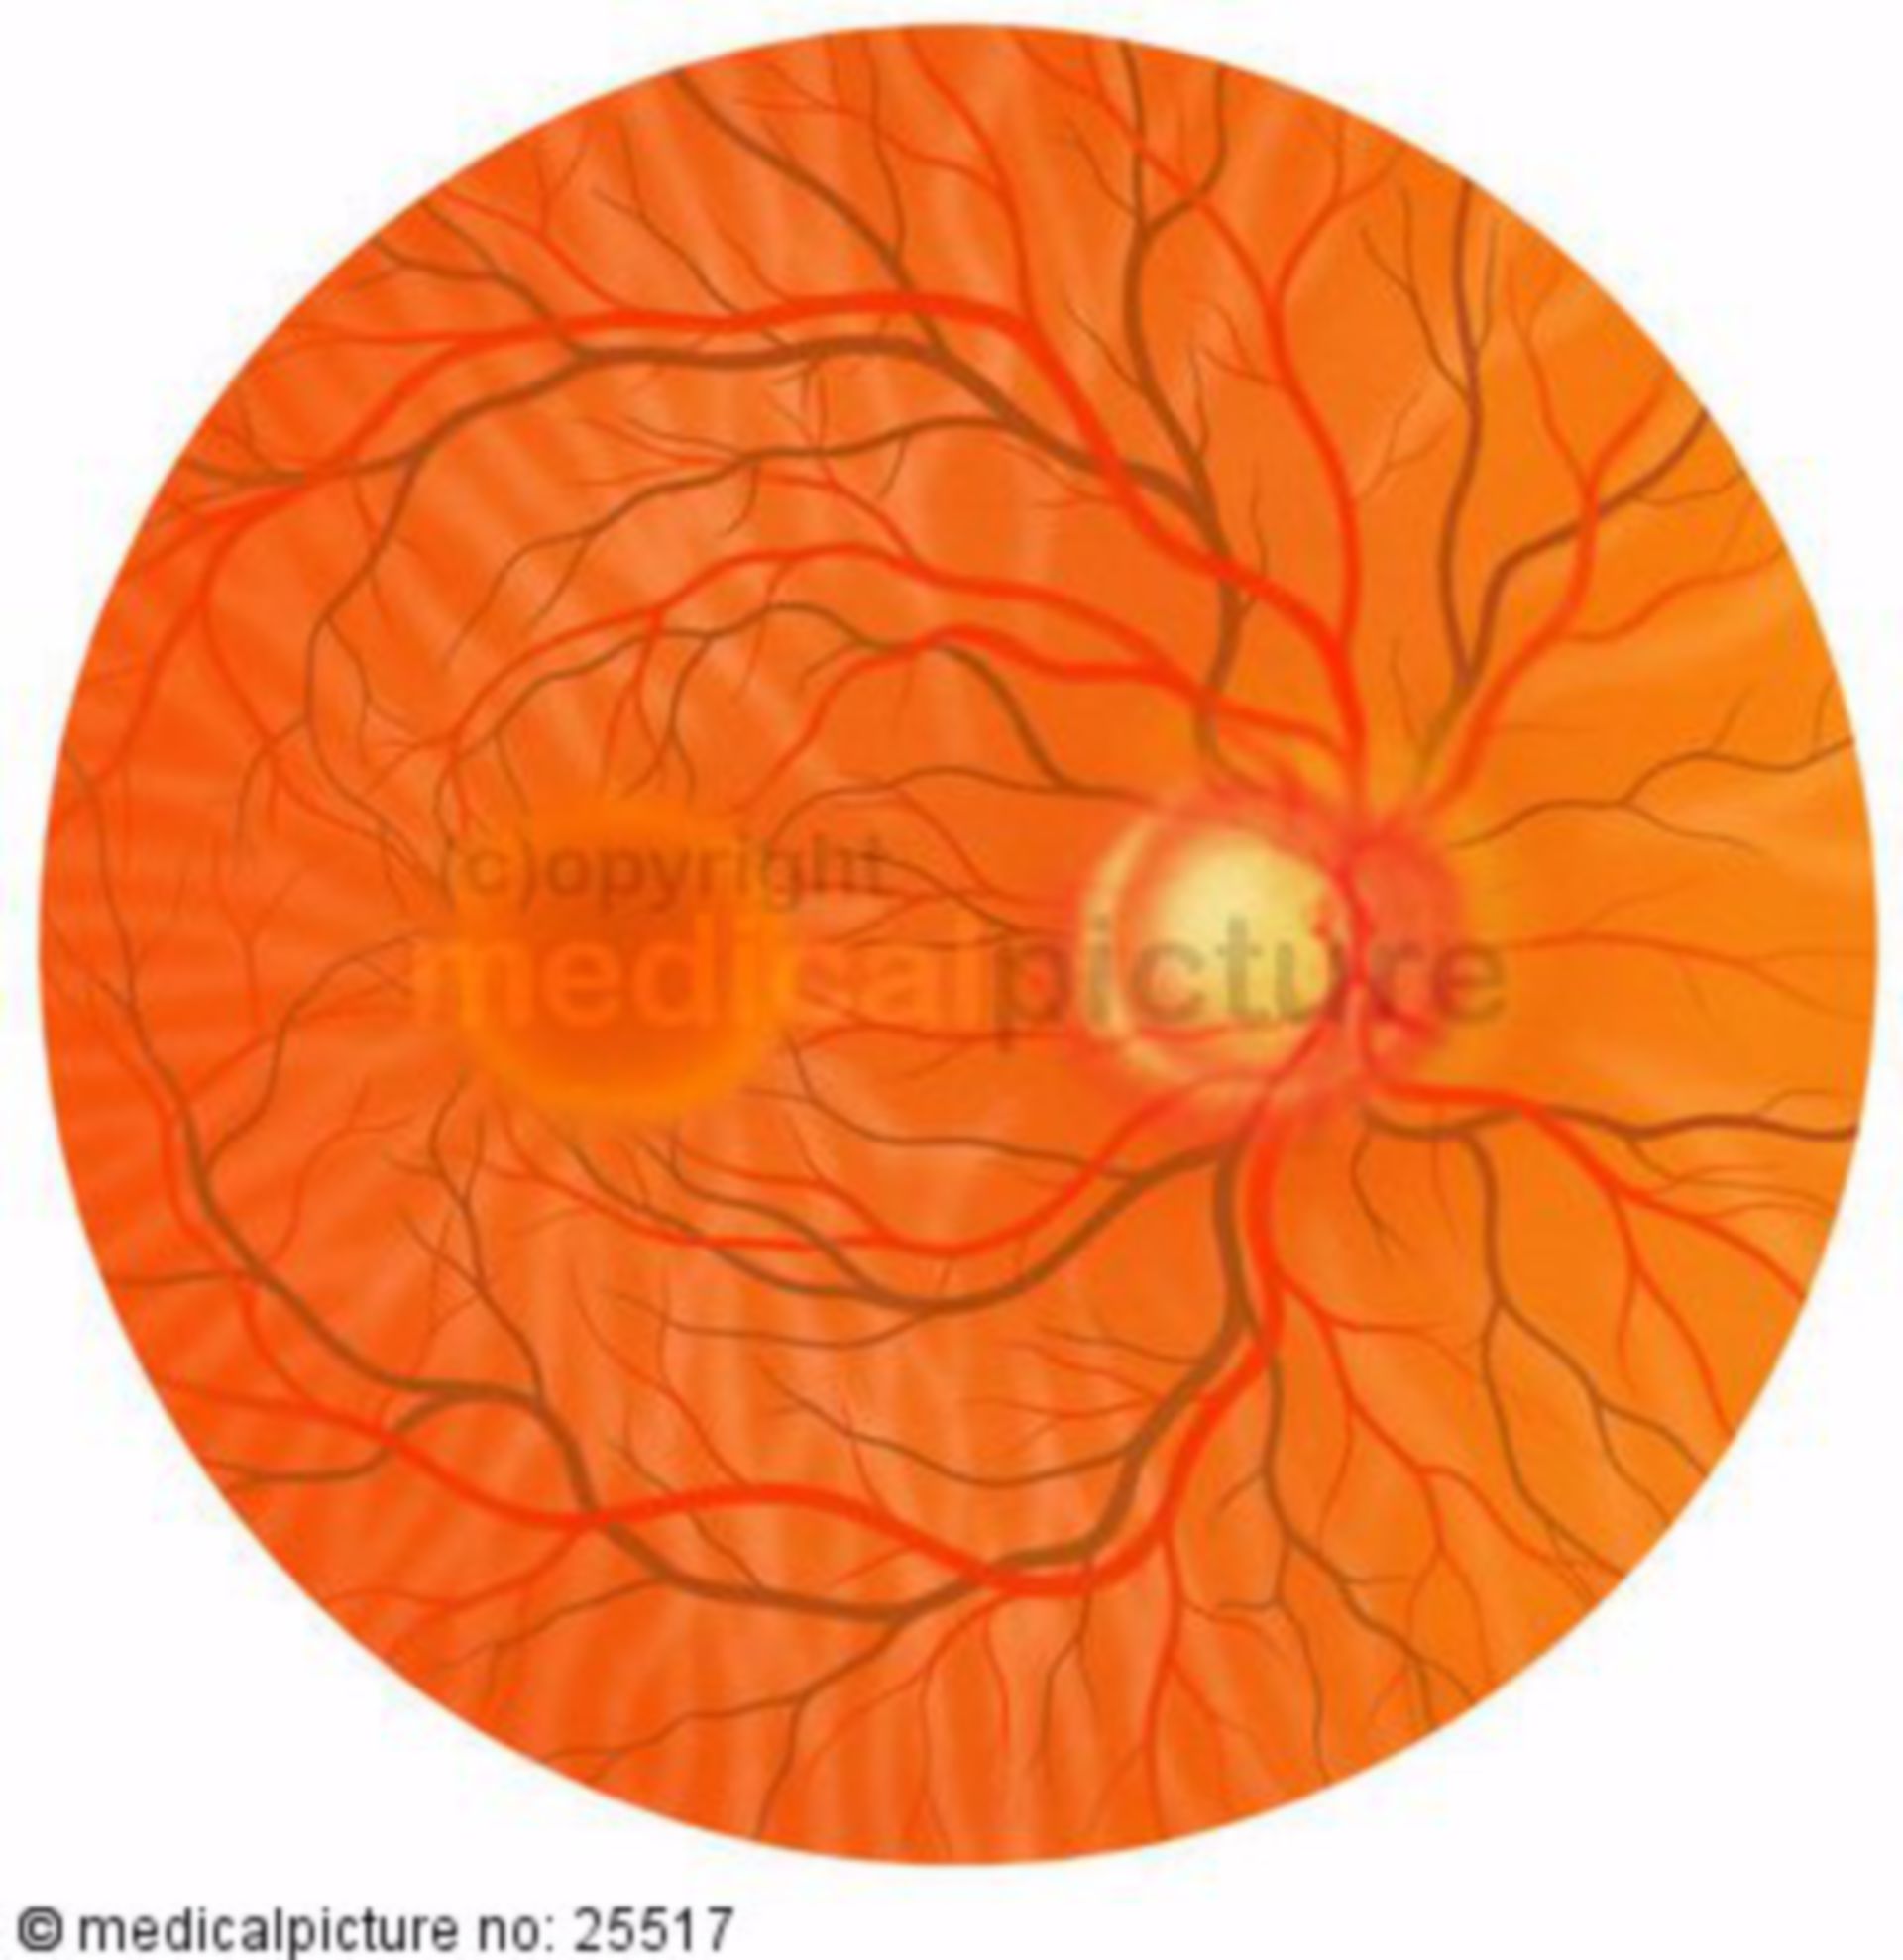 Augenhintergrundspiegelung bei Grünem Star, Glaukom